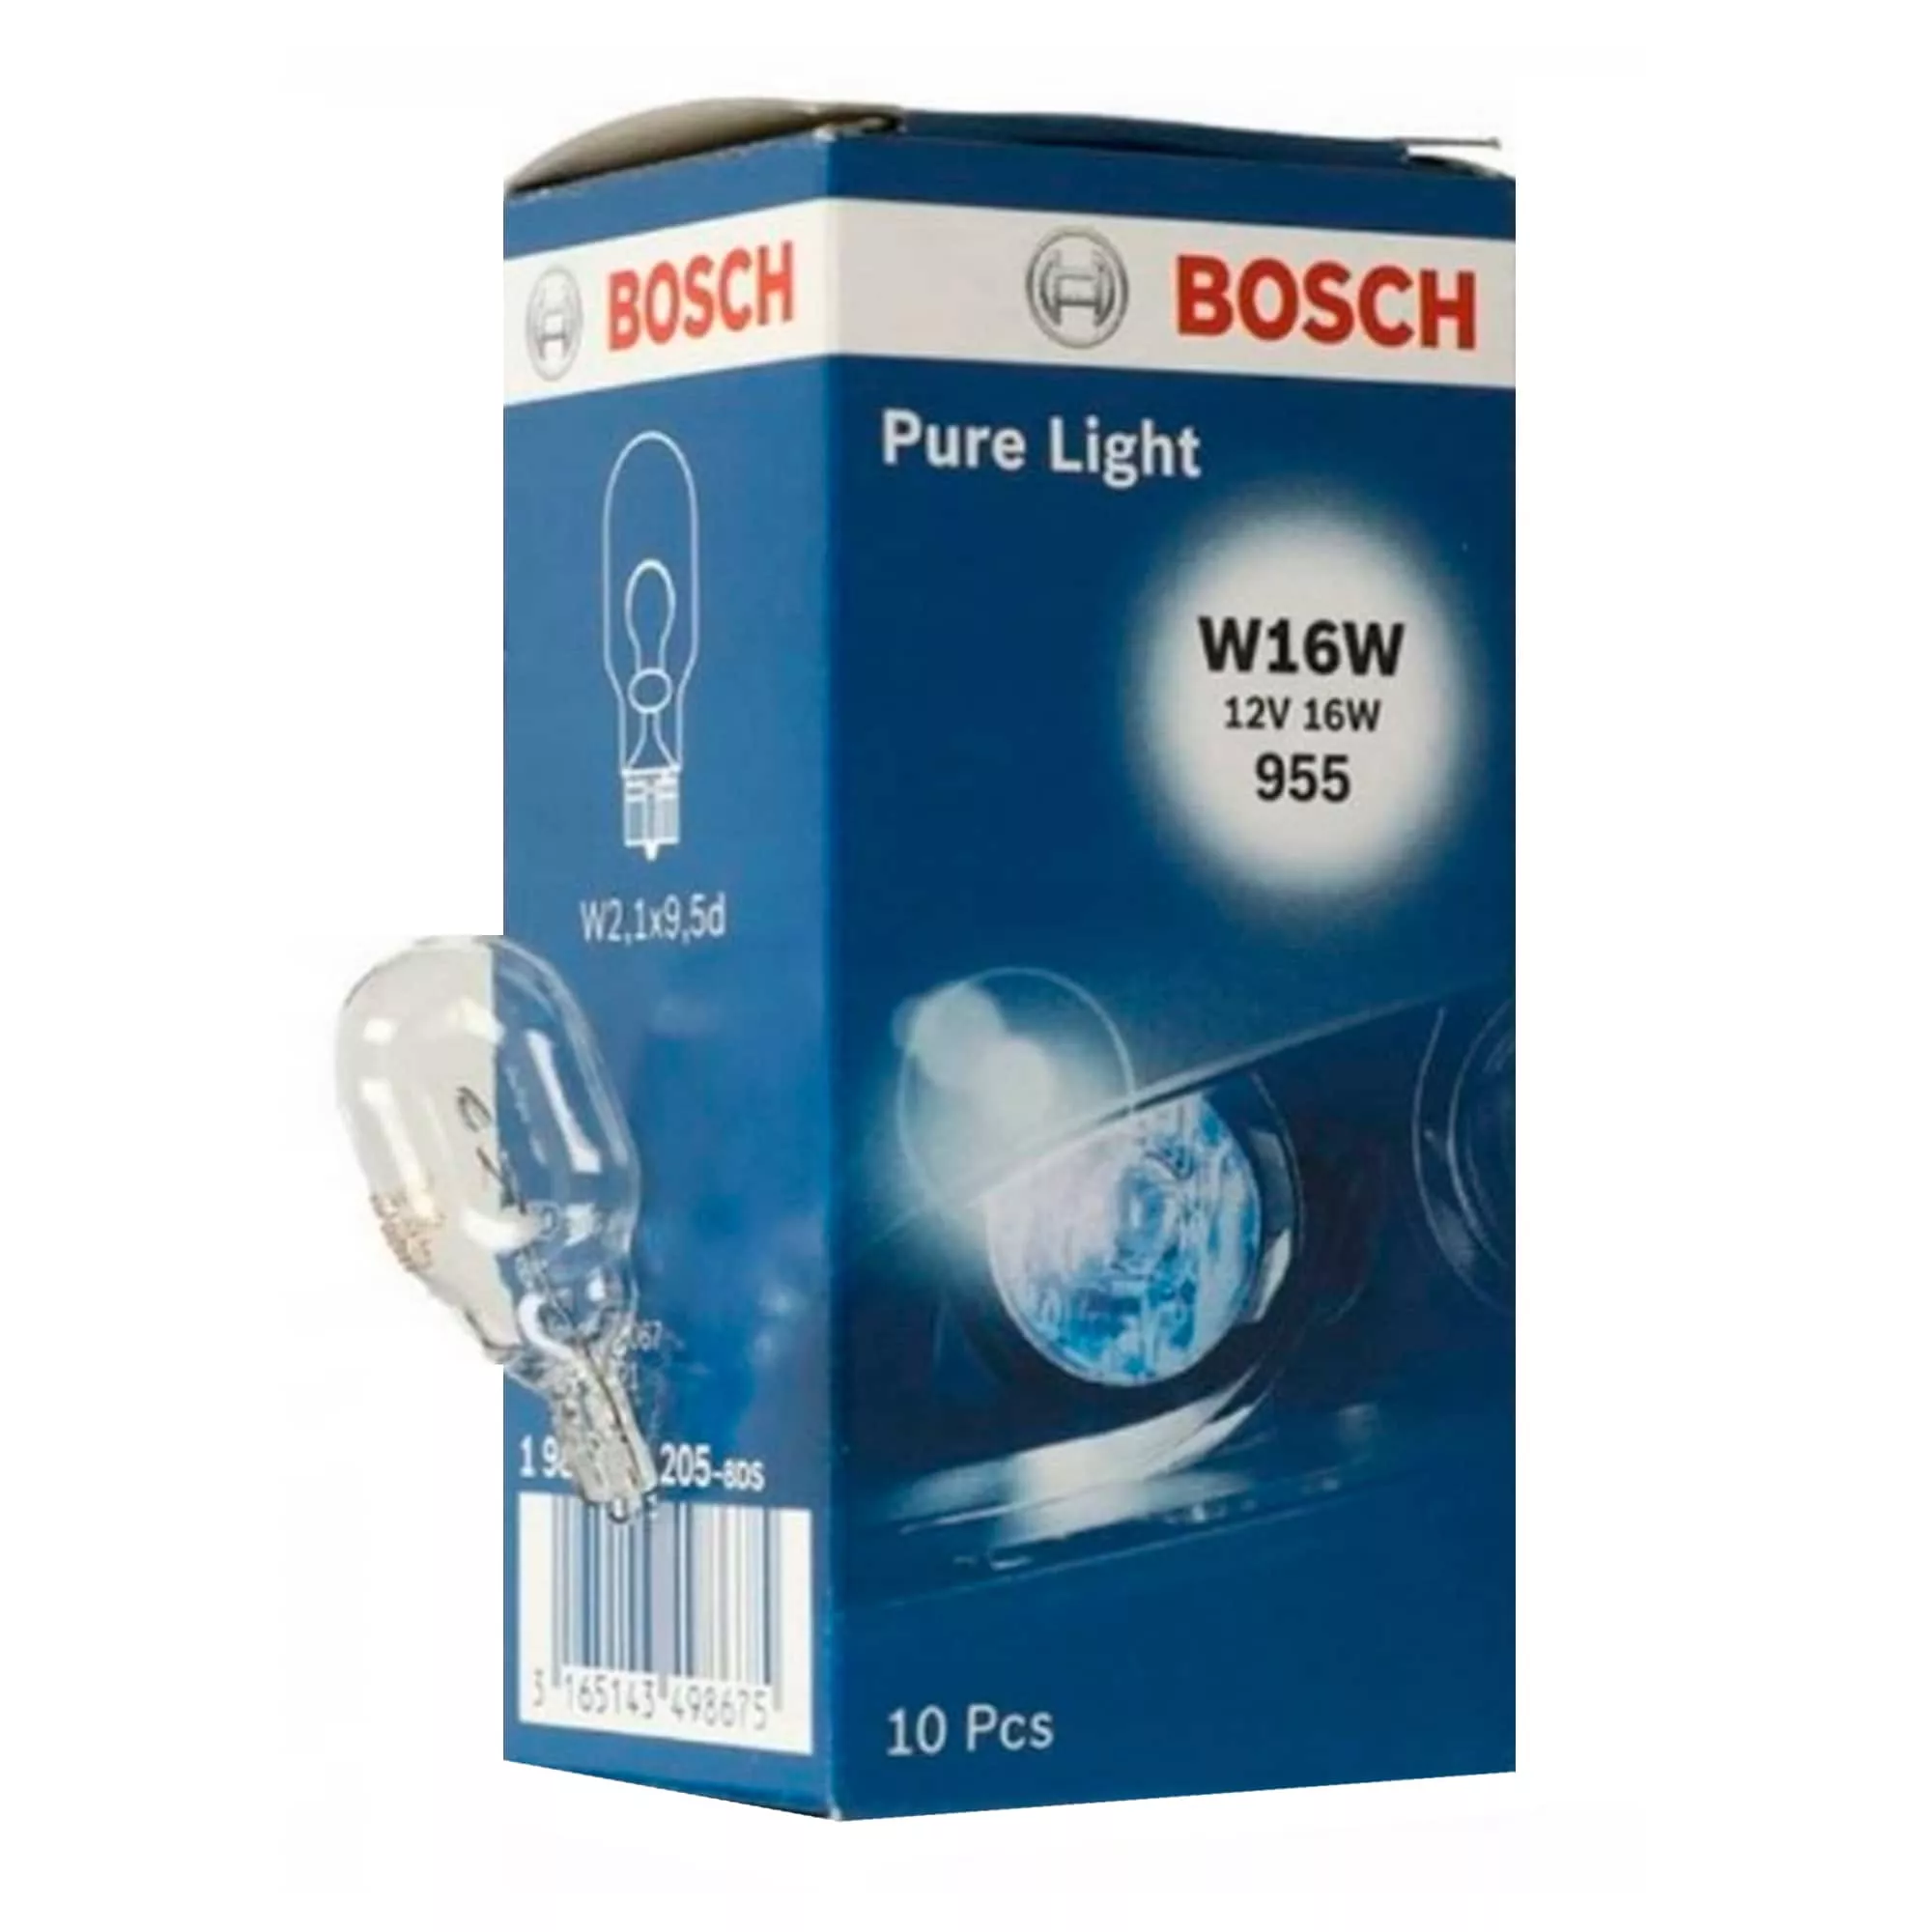 Лампа Bosch Pure Light W16W 12V 16W 1 987 302 205